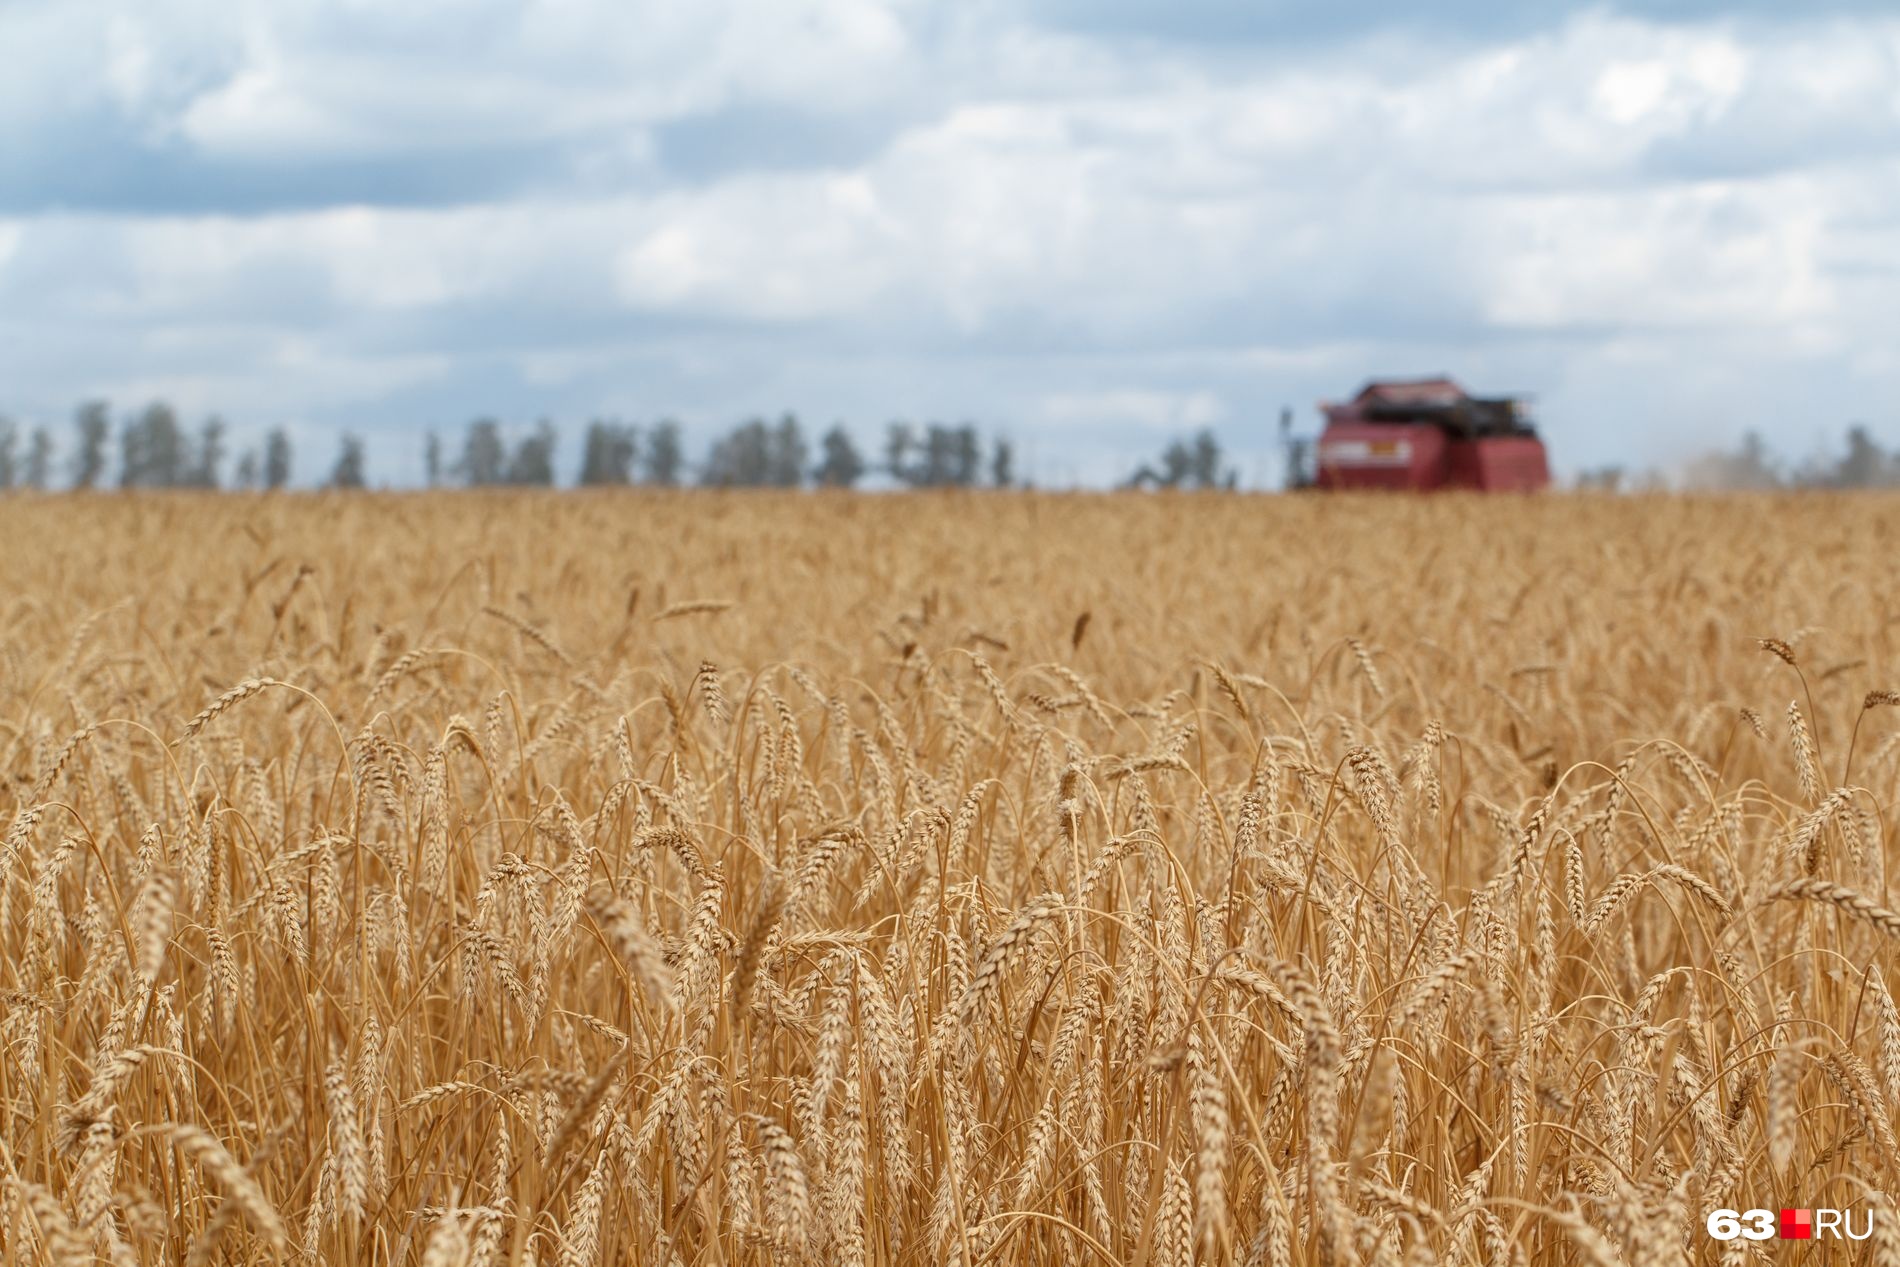 В России вполне себе неплохие пшеница, ячмень, кукуруза и подсолнечник, но хватит ли мощности нашим семеноводческим хозяйствам?